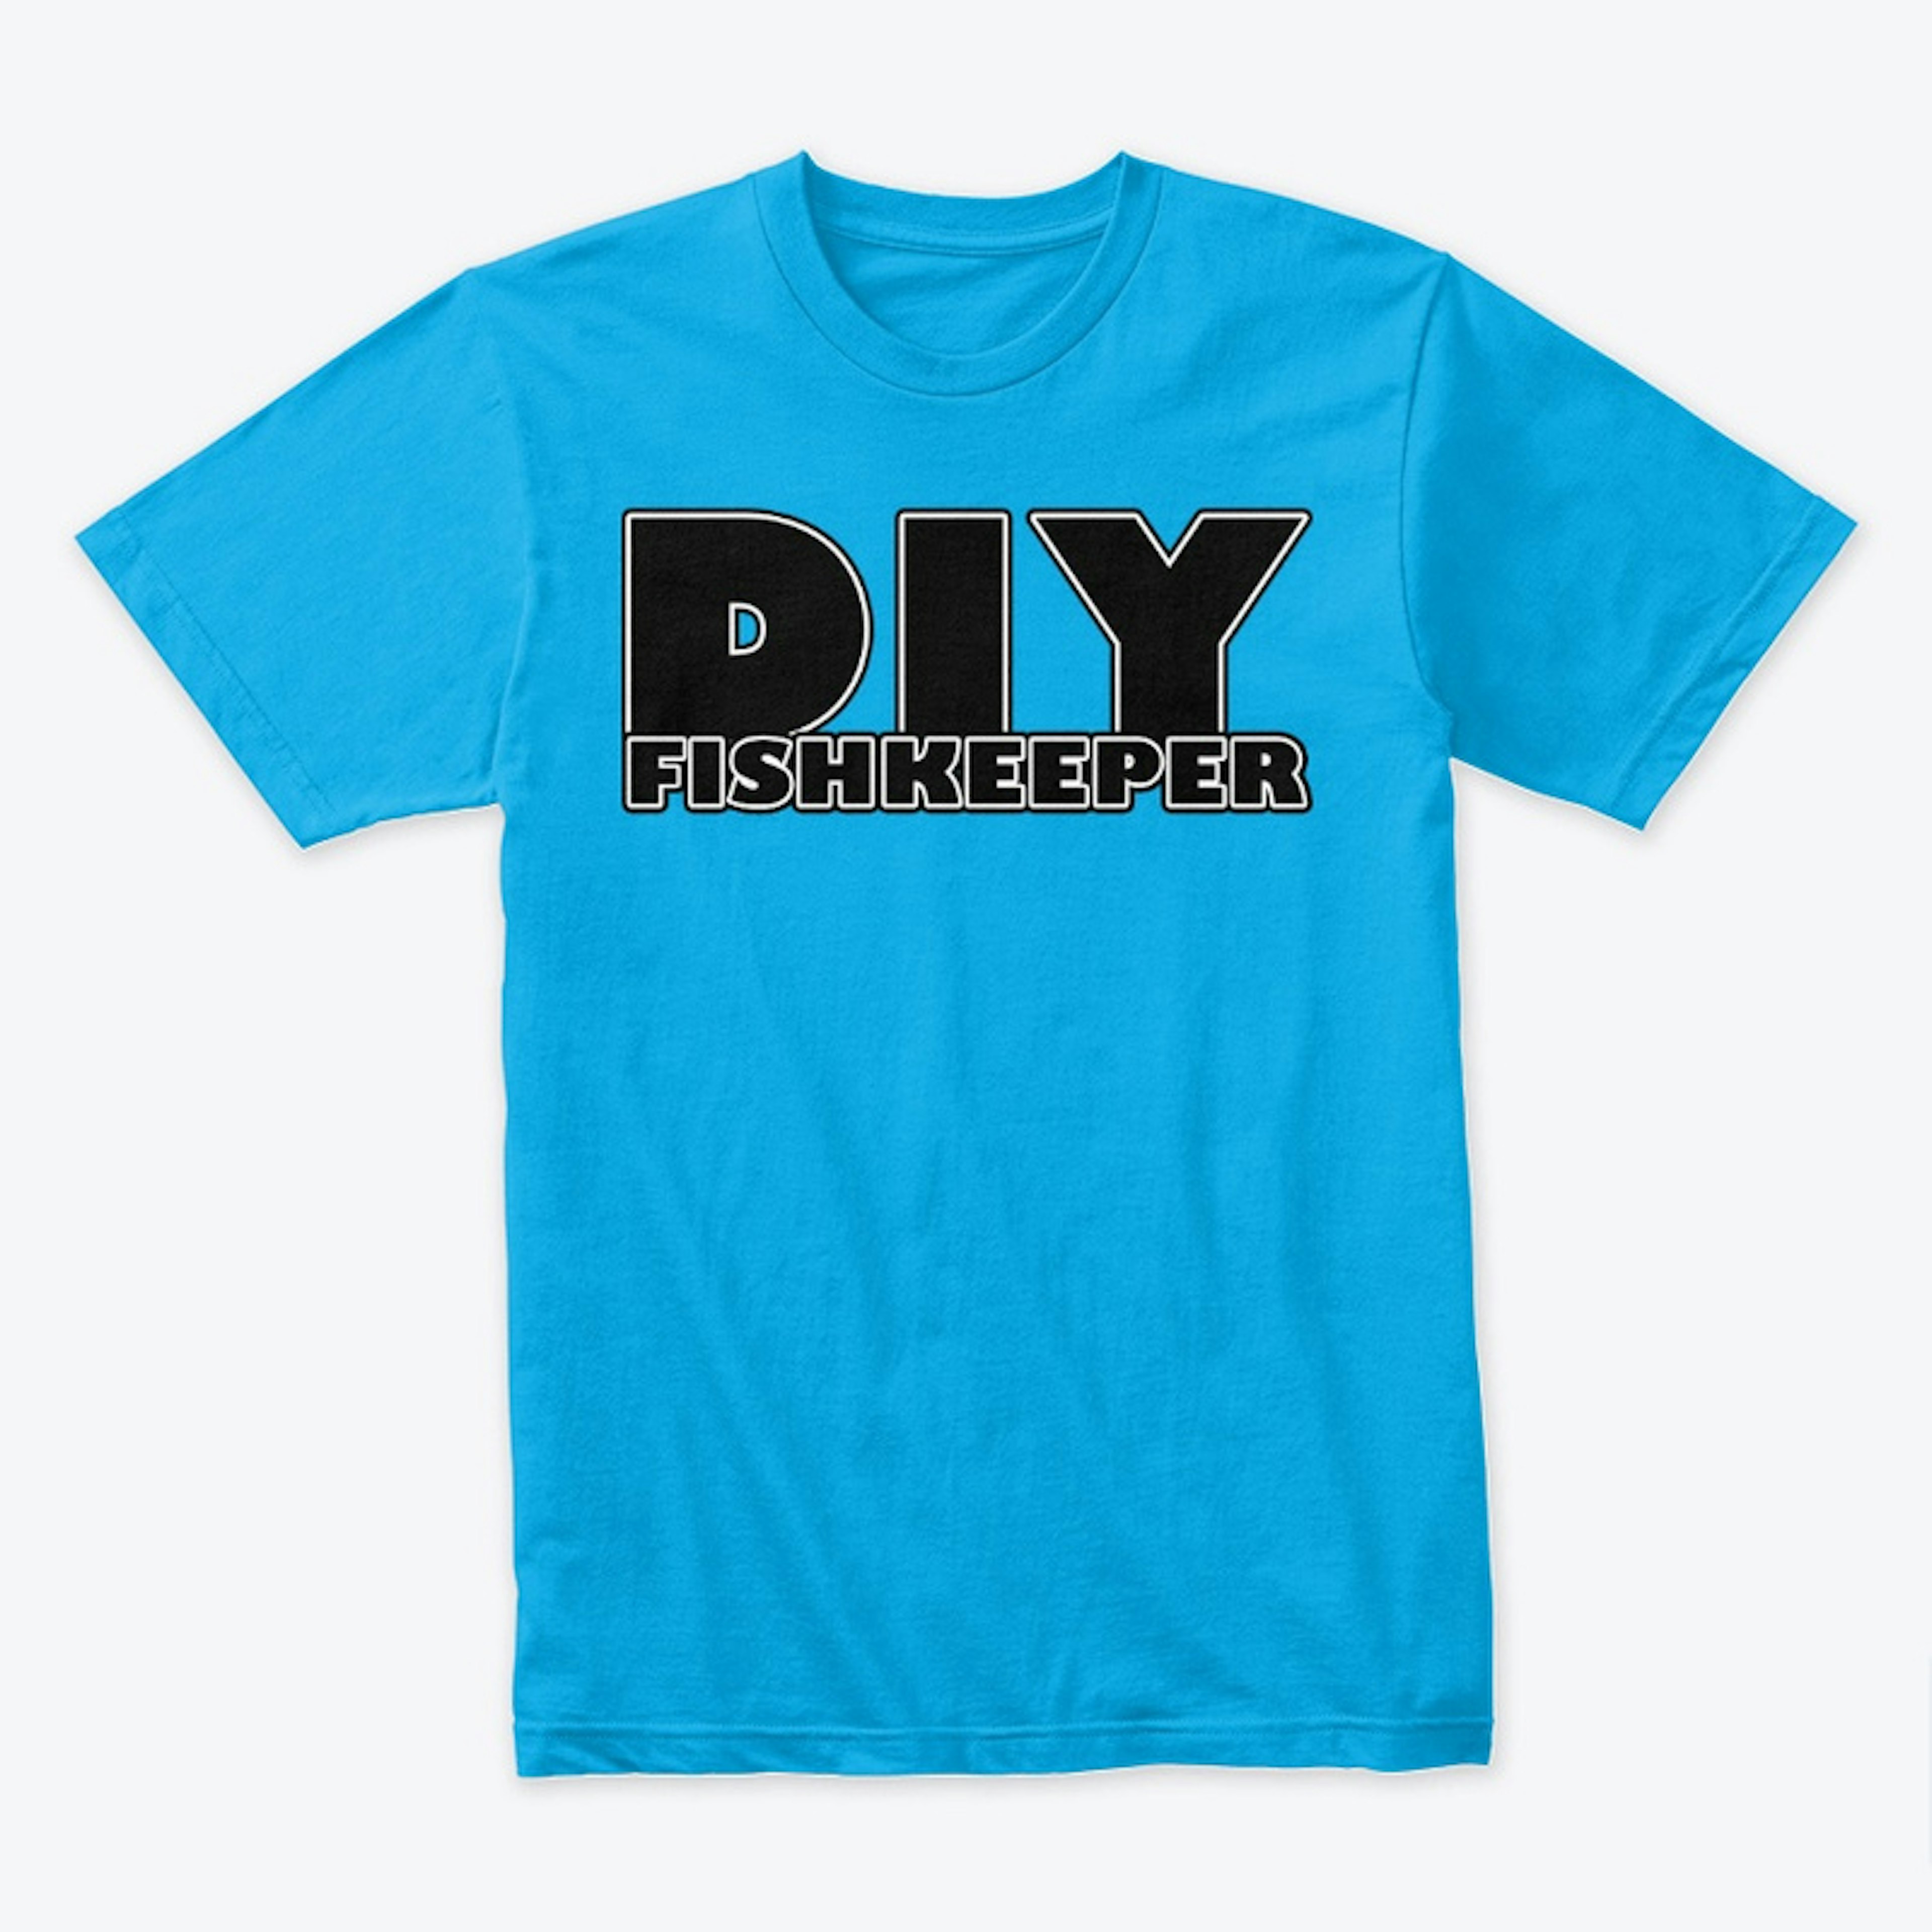 DIY fishkeeper T-shirt